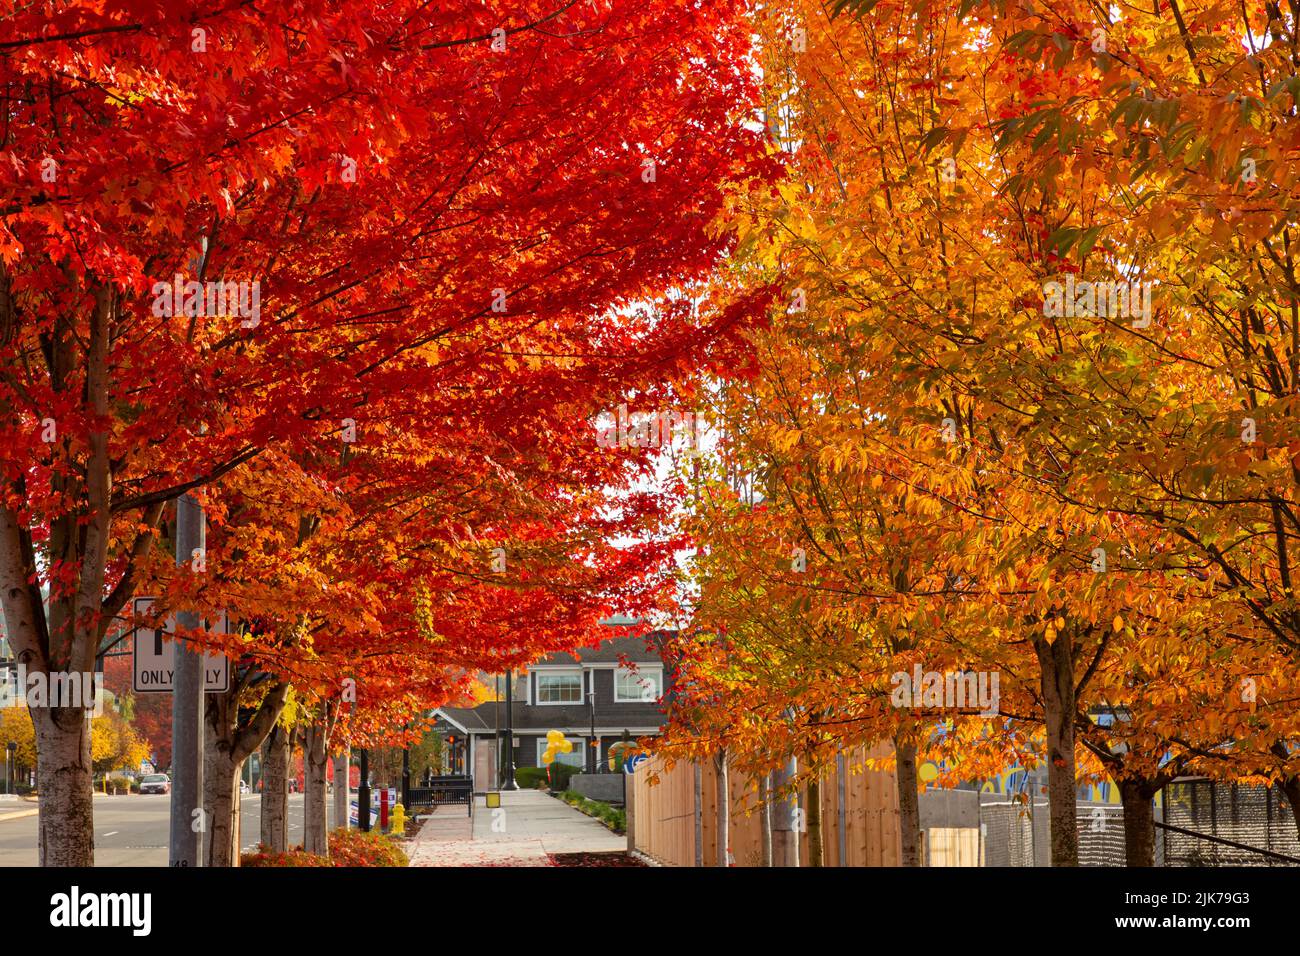 WA21827-00...WASHINGTON - feuilles colorées à l'automne bordant les trottoirs à Woodinville, Washington. Banque D'Images